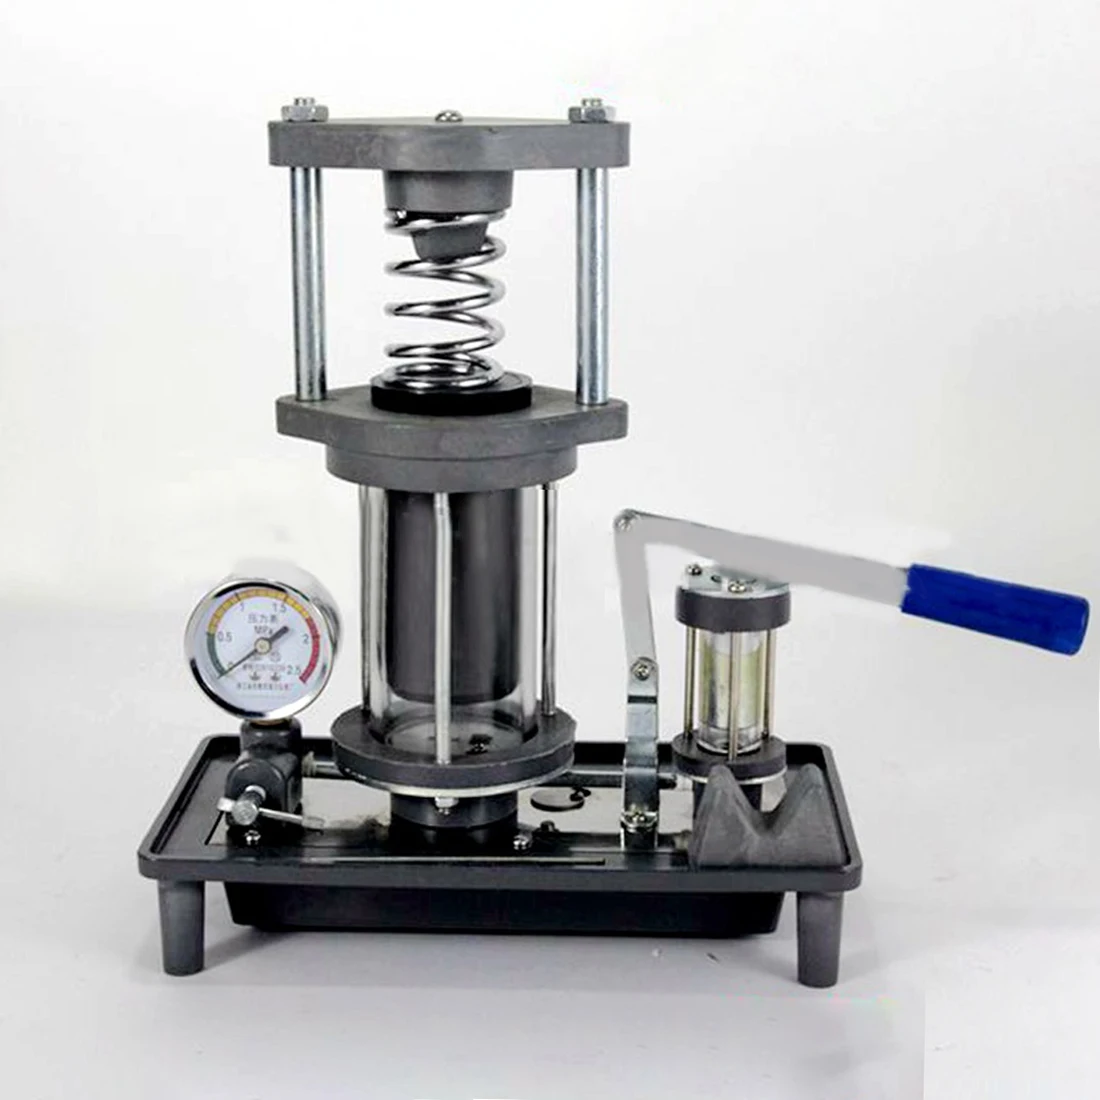 NFSTRIKE гидравлический пресс Модель гидравлическая машина физическая Лаборатория Инструмент научная образовательная модель